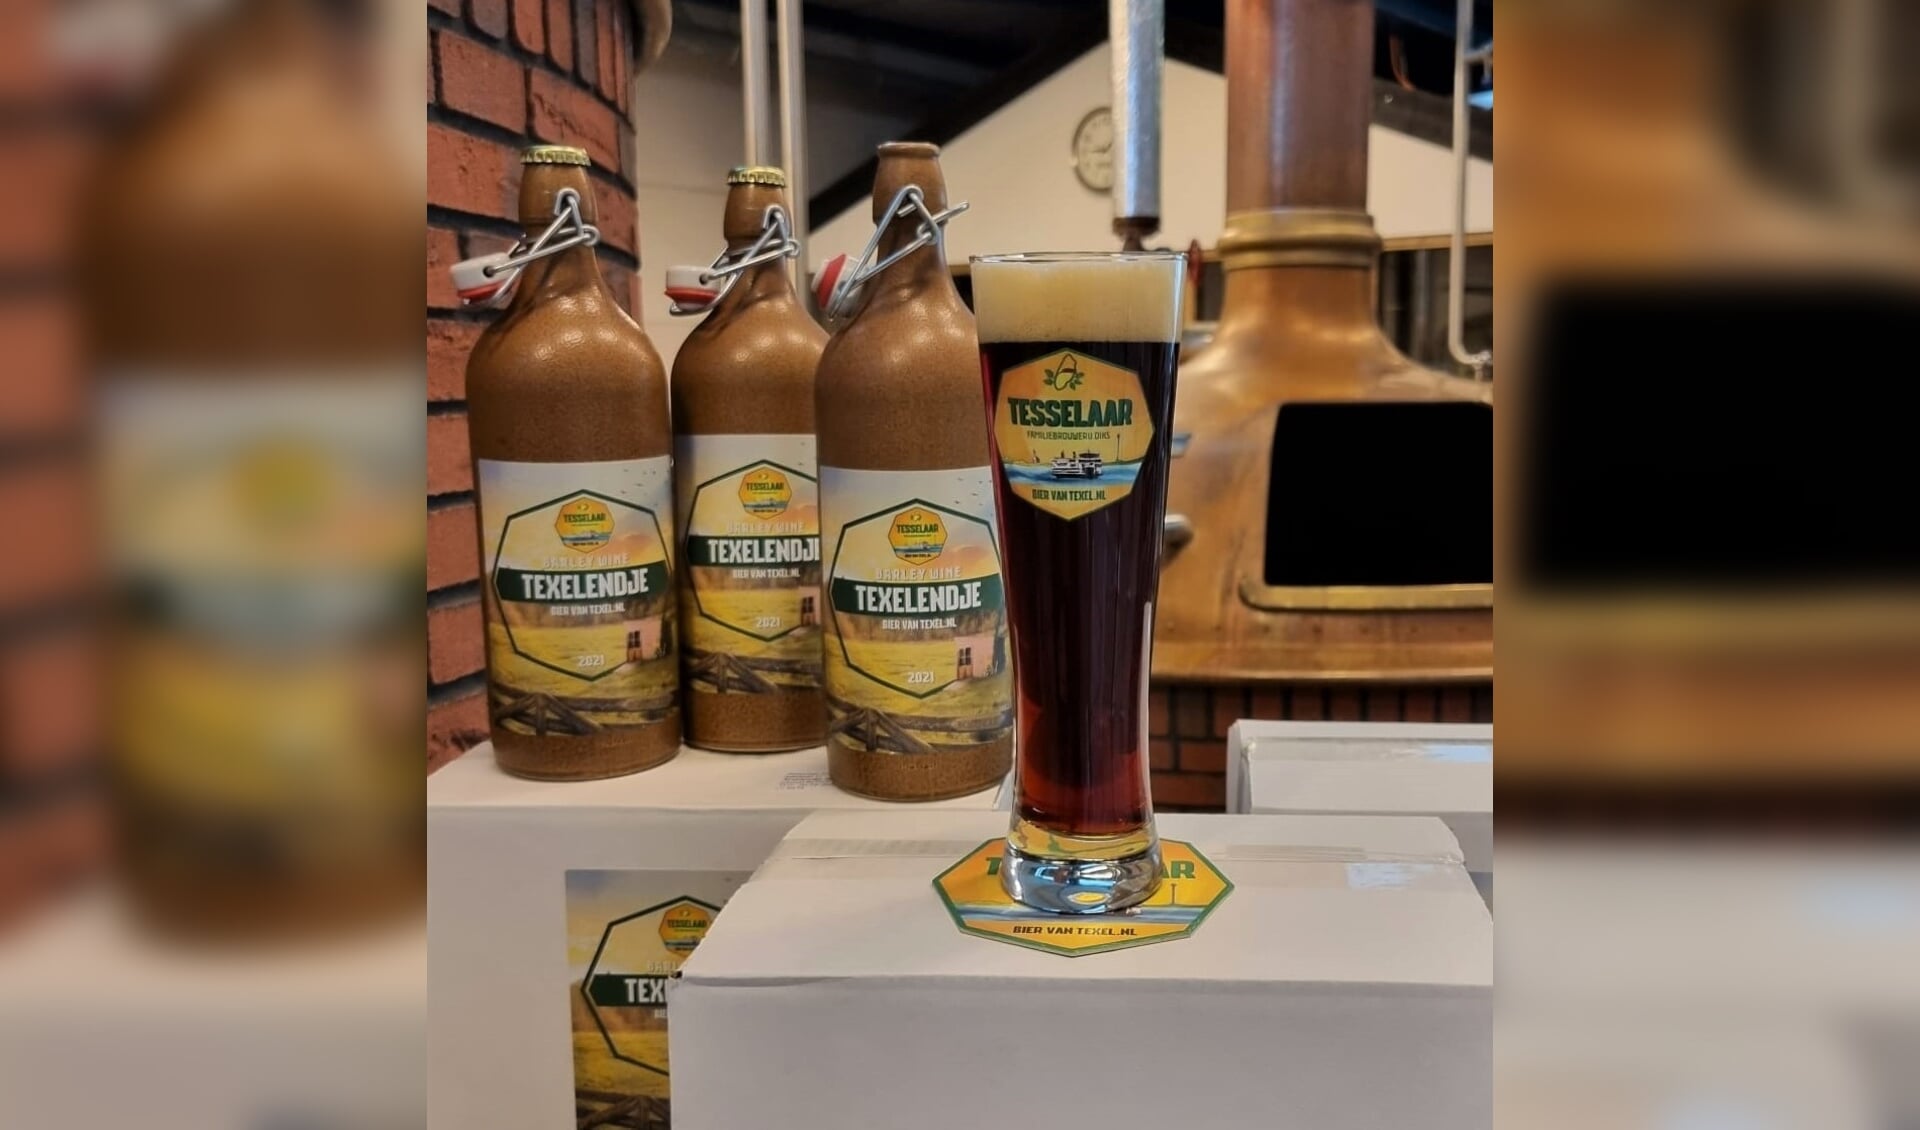 Met Texelendje start Tesselaar Familiebrouwerij Diks een nieuwe traditie.